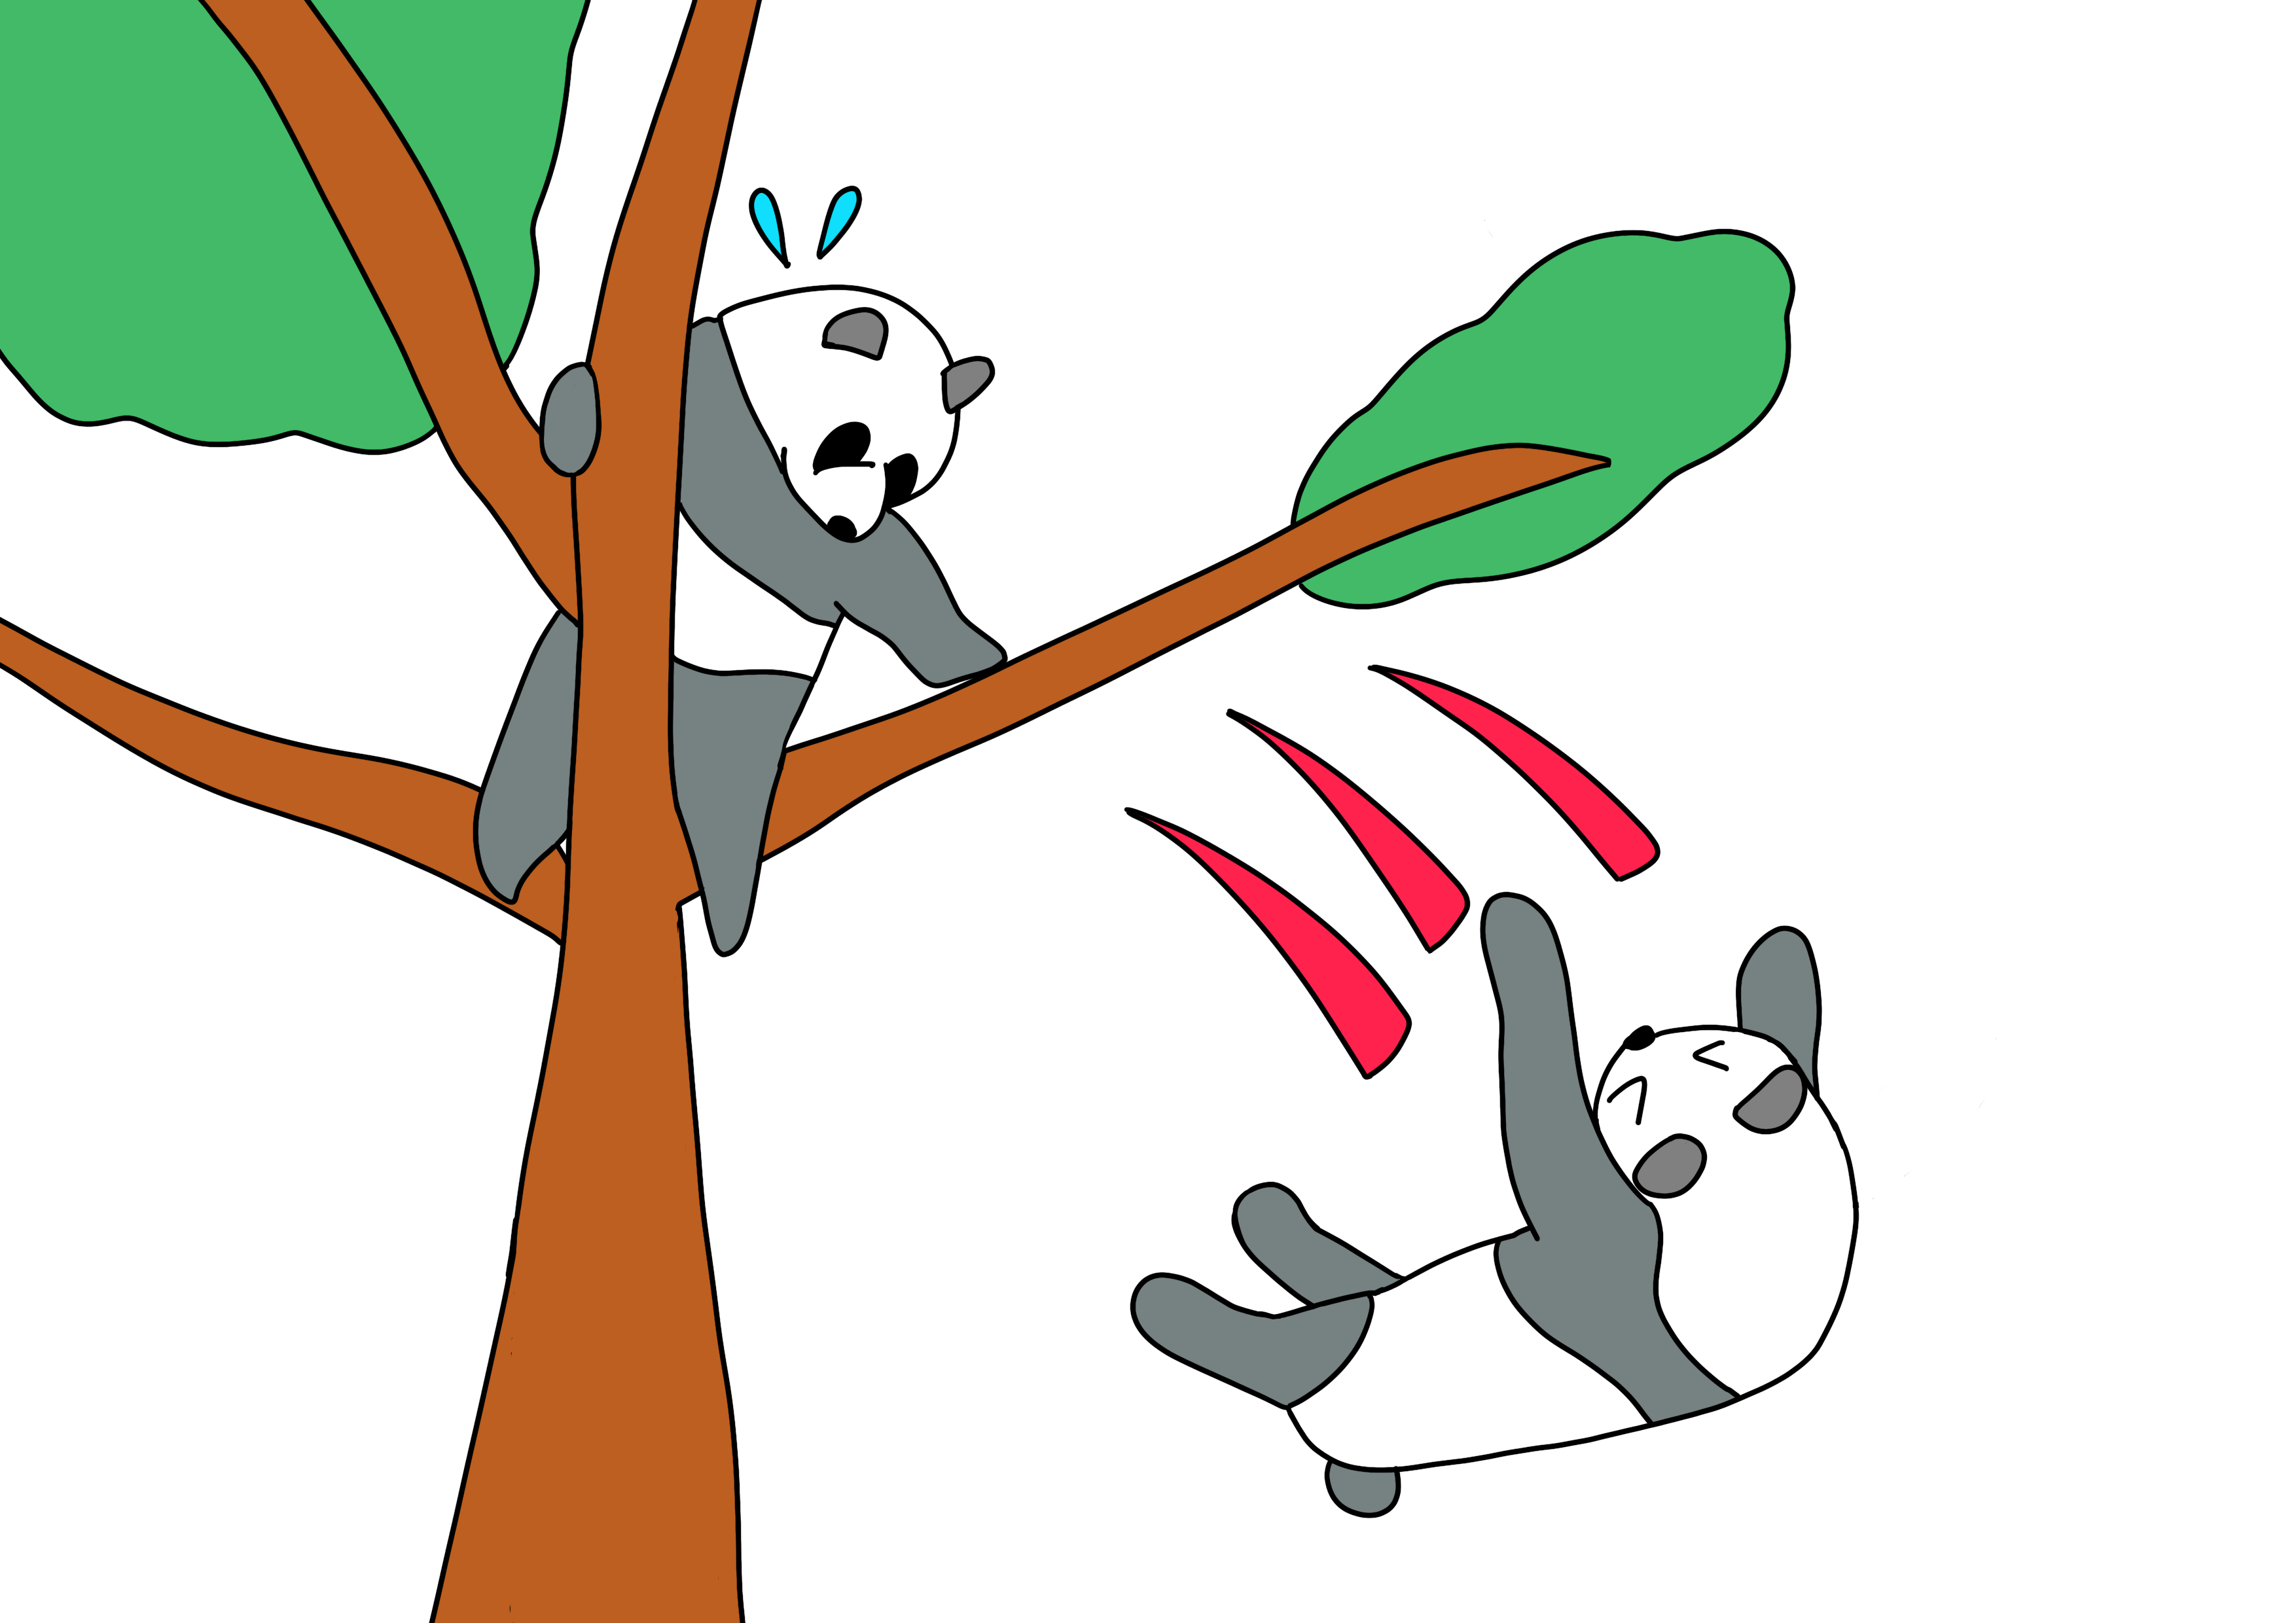 43課イラスト【落ちる/木からパンダが落ちる】